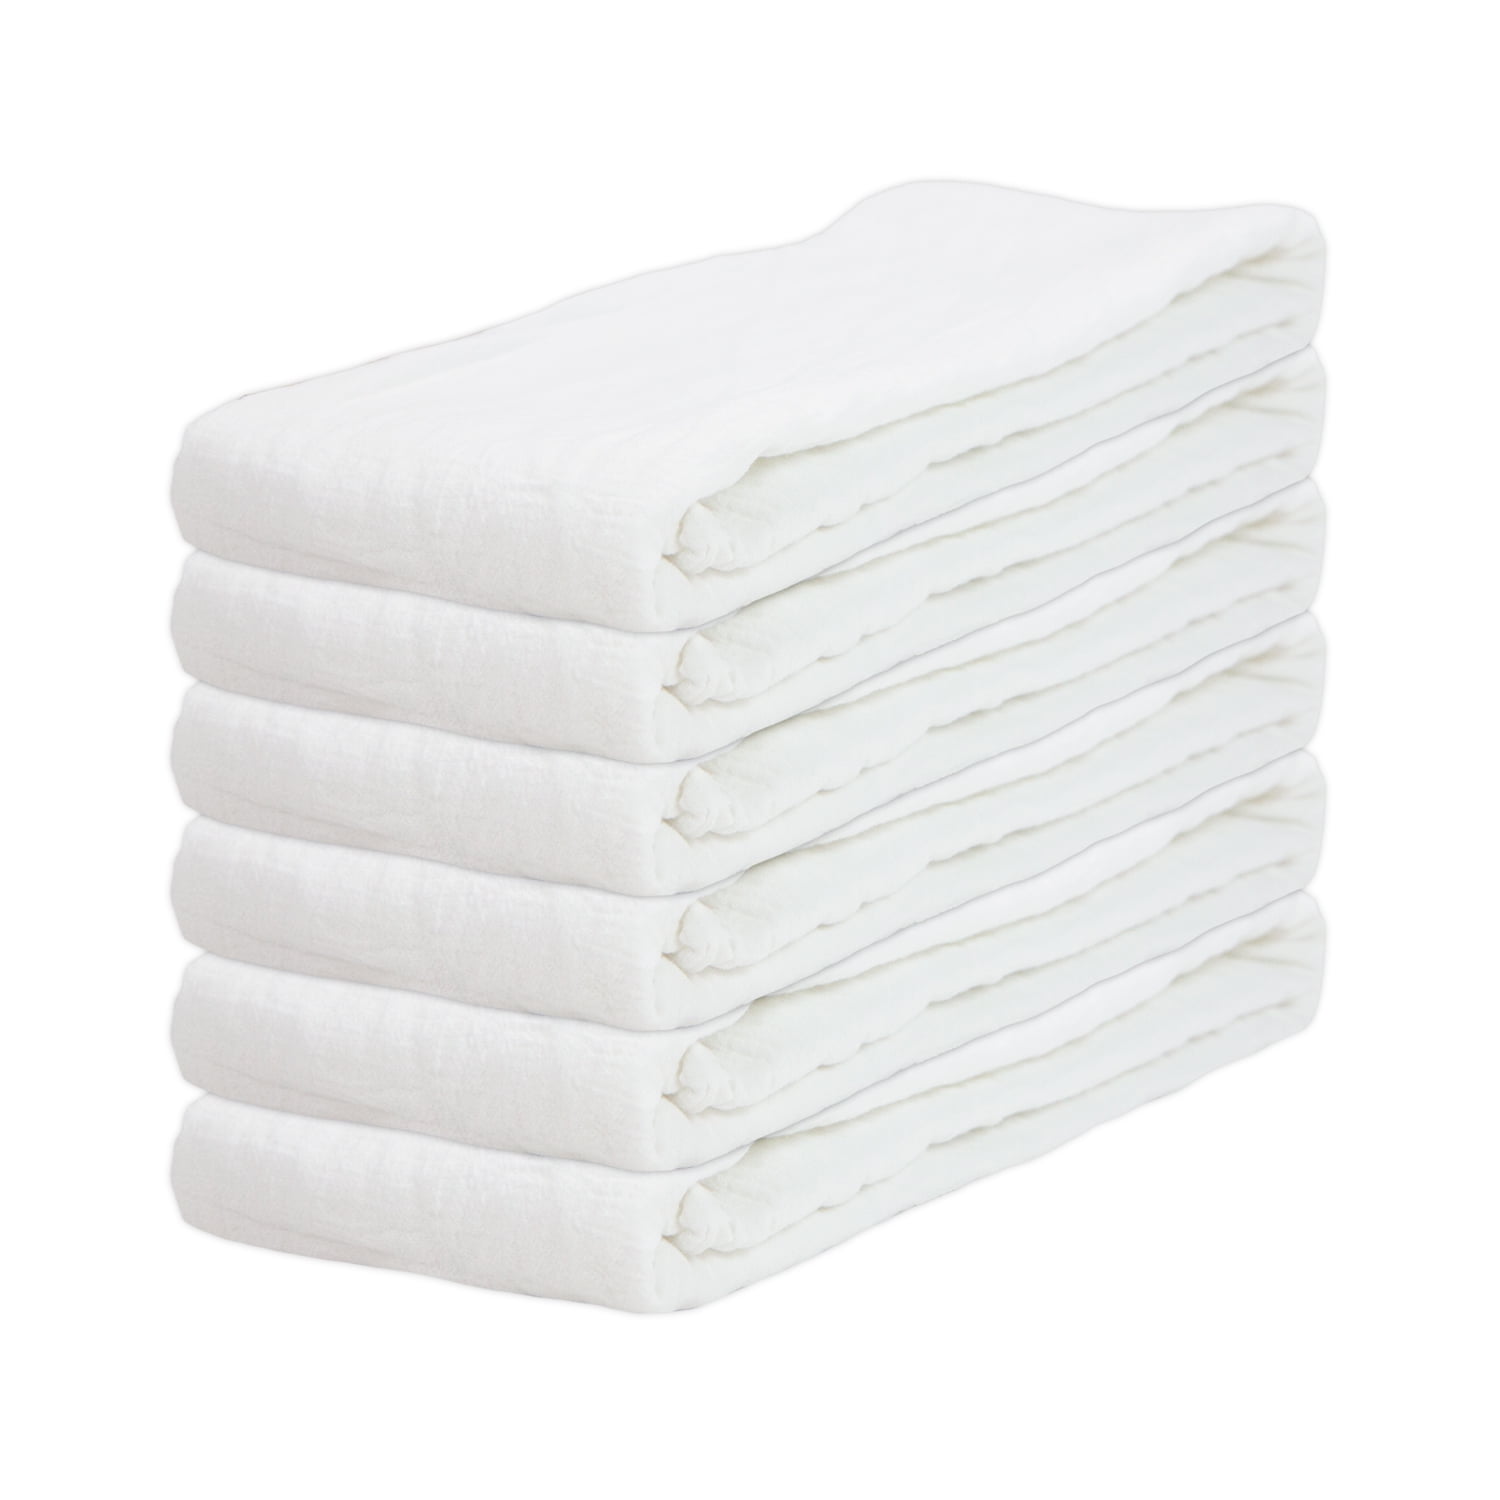  Cote De Amor Flour Sack Towels White 6 Pack 28x28